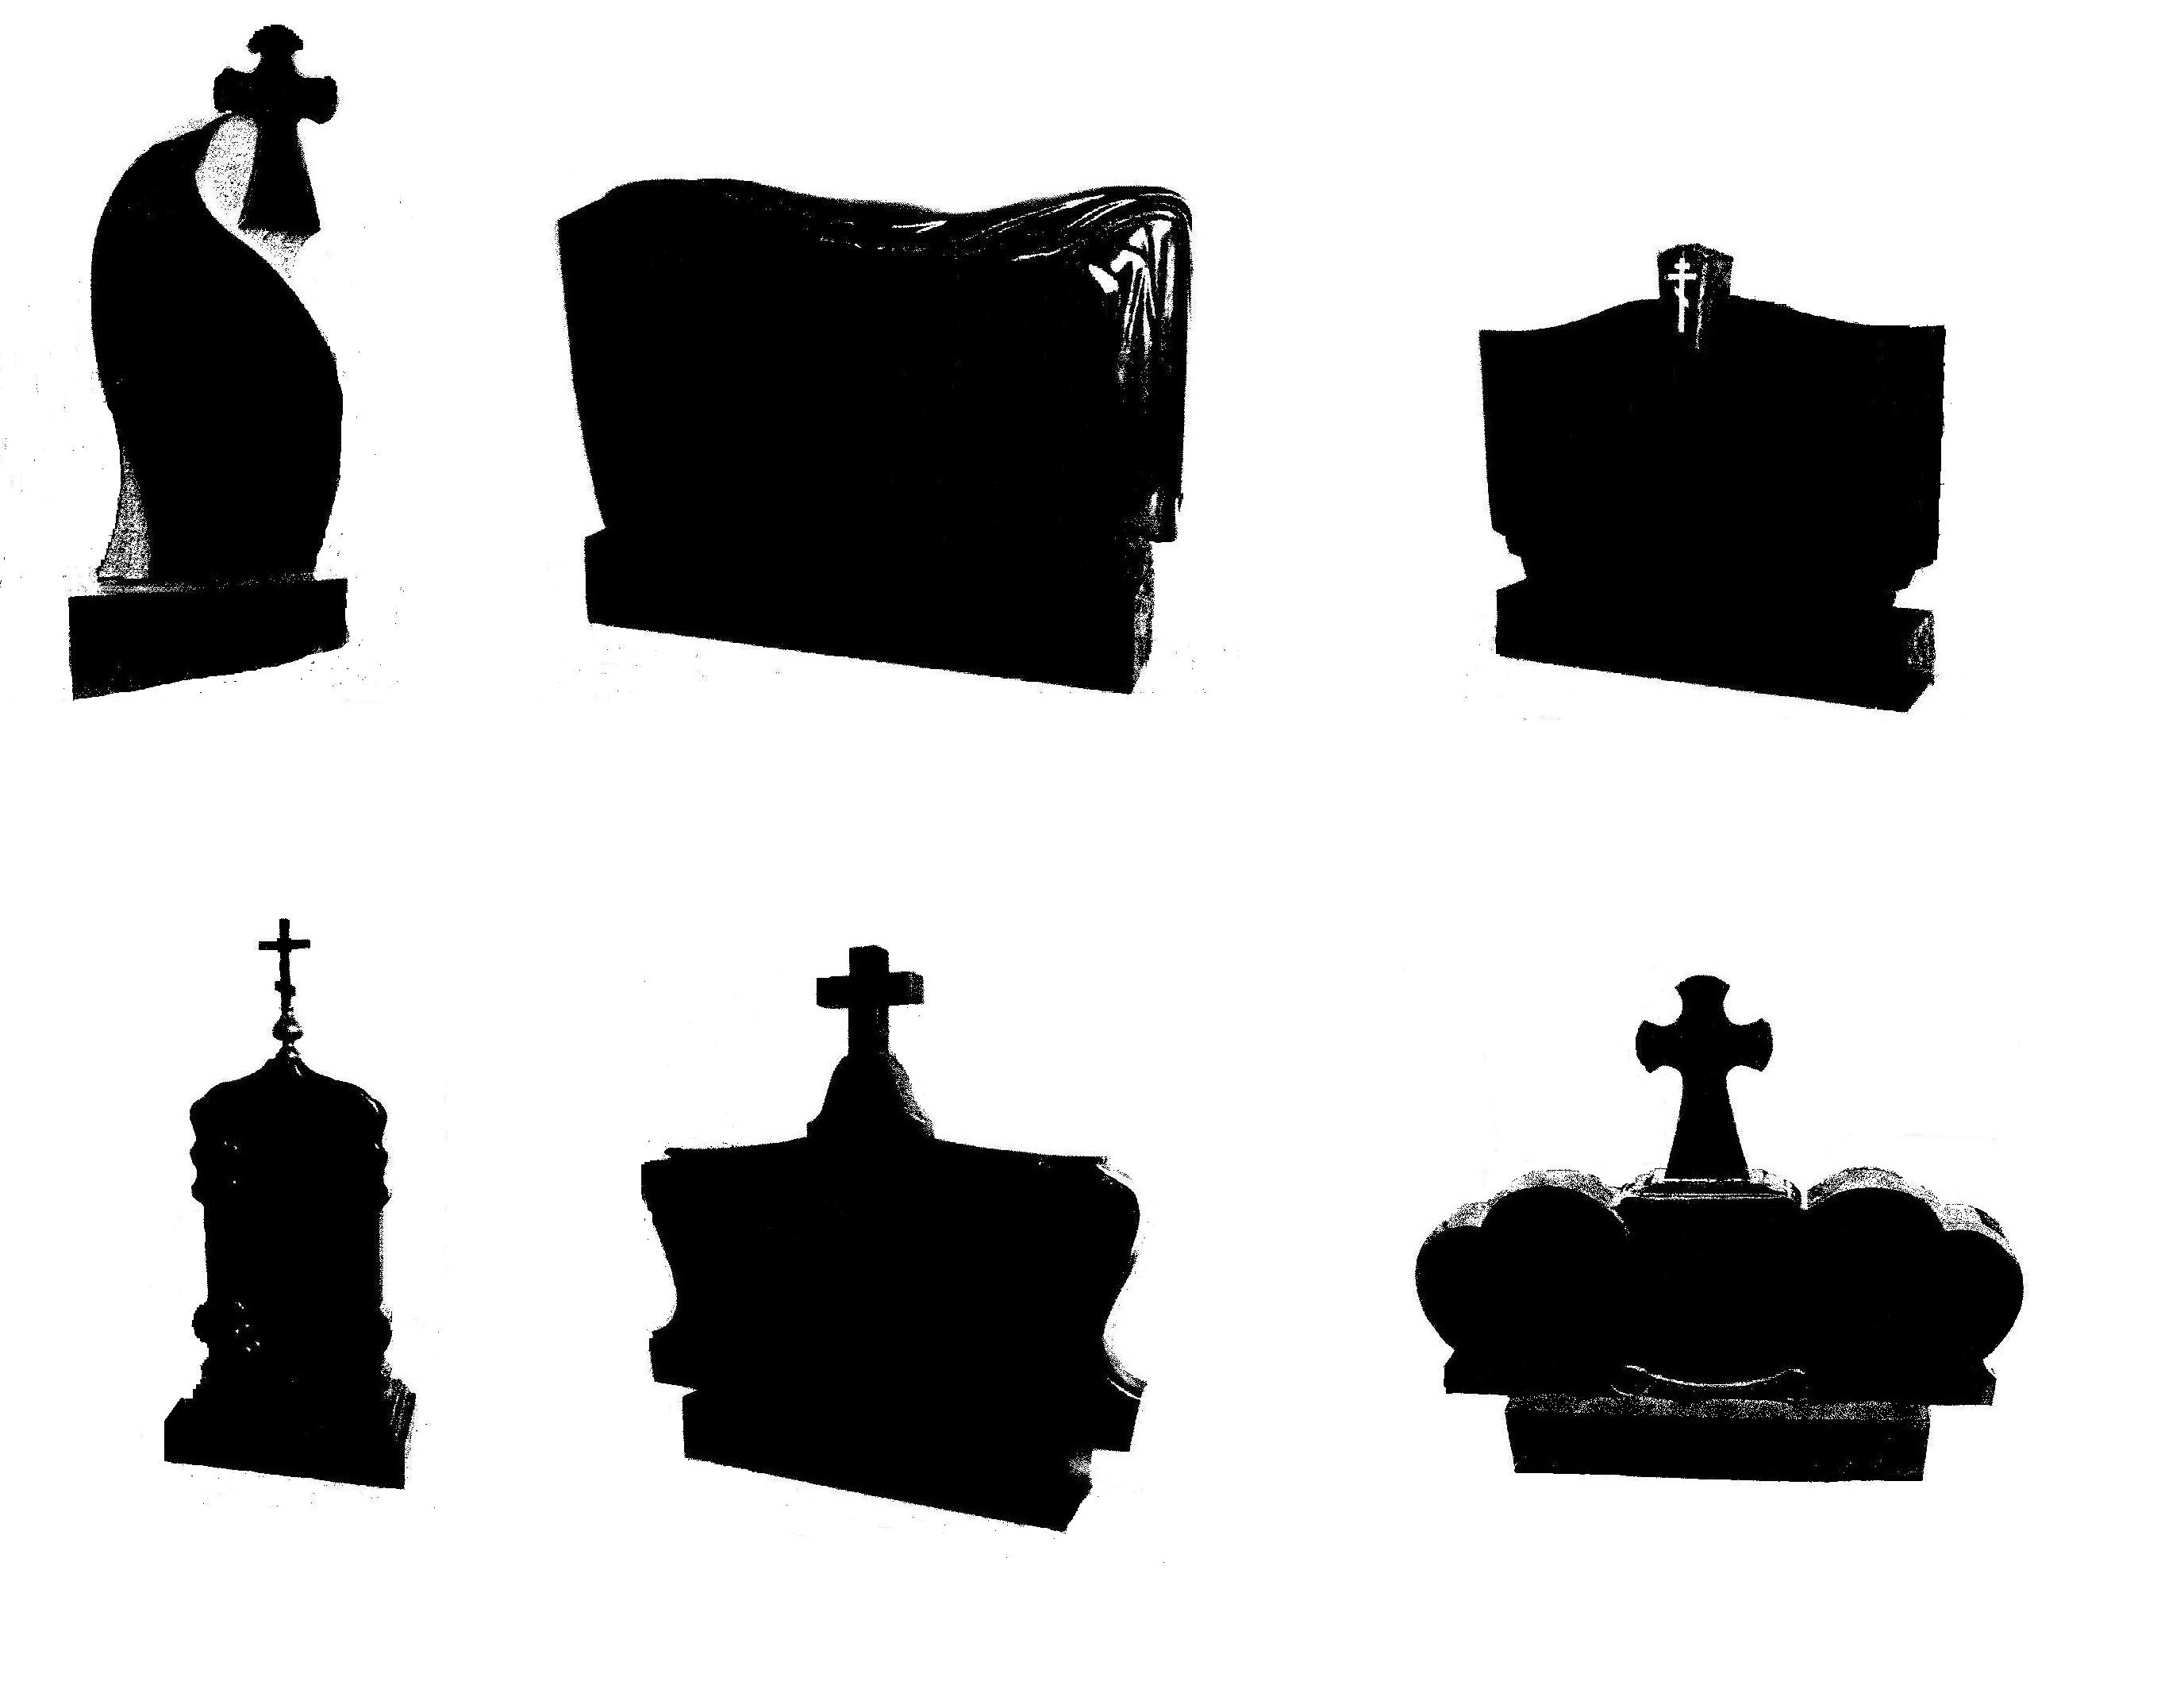 nadgrobija-kresty-tombstones- crosses